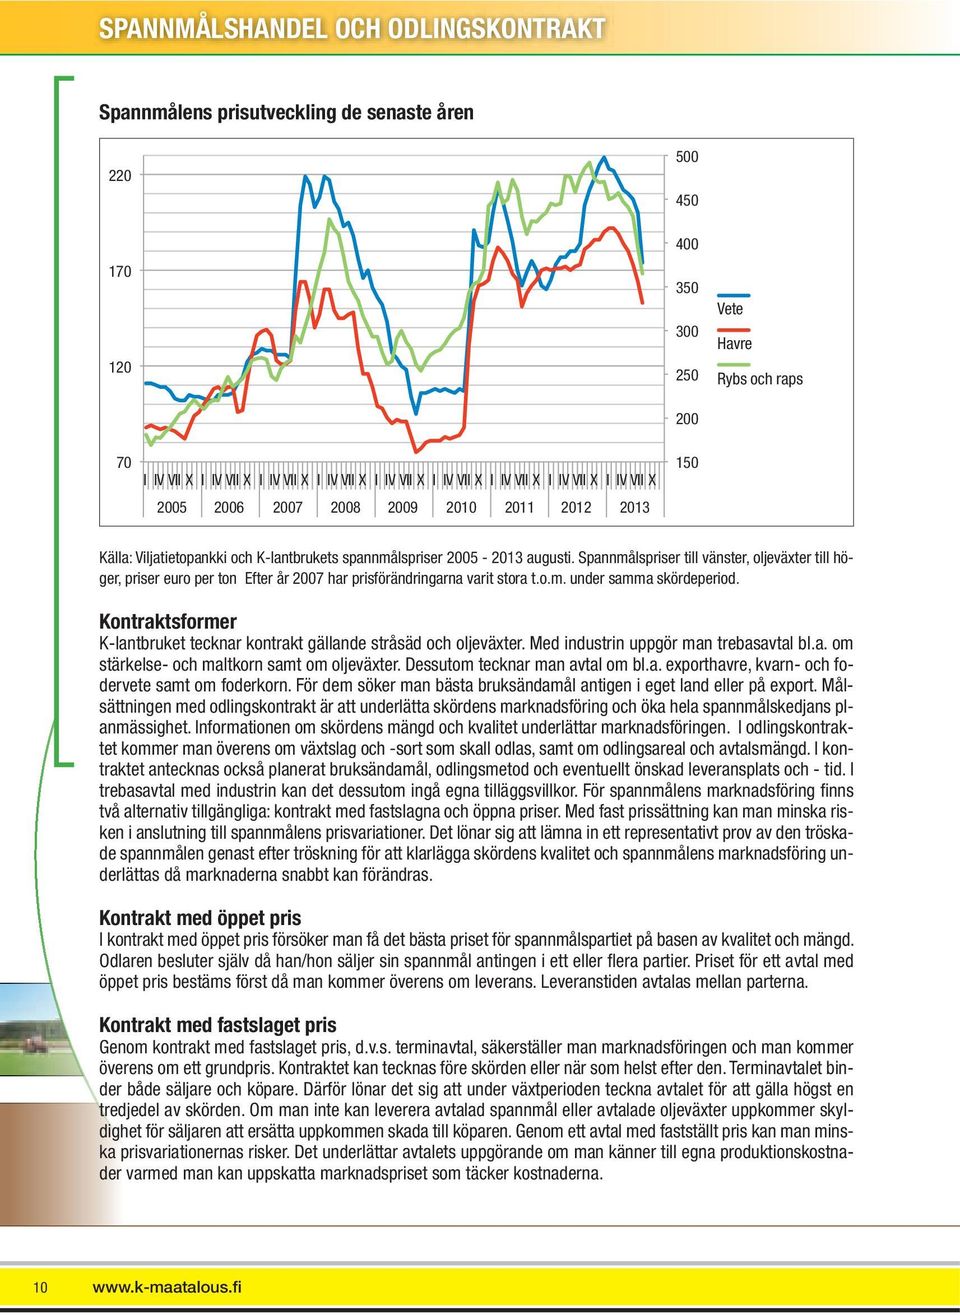 Spannmålspriser till vänster, oljeväxter till höger, priser euro per ton Efter år 2007 har prisförändringarna varit stora t.o.m. under samma skördeperiod.